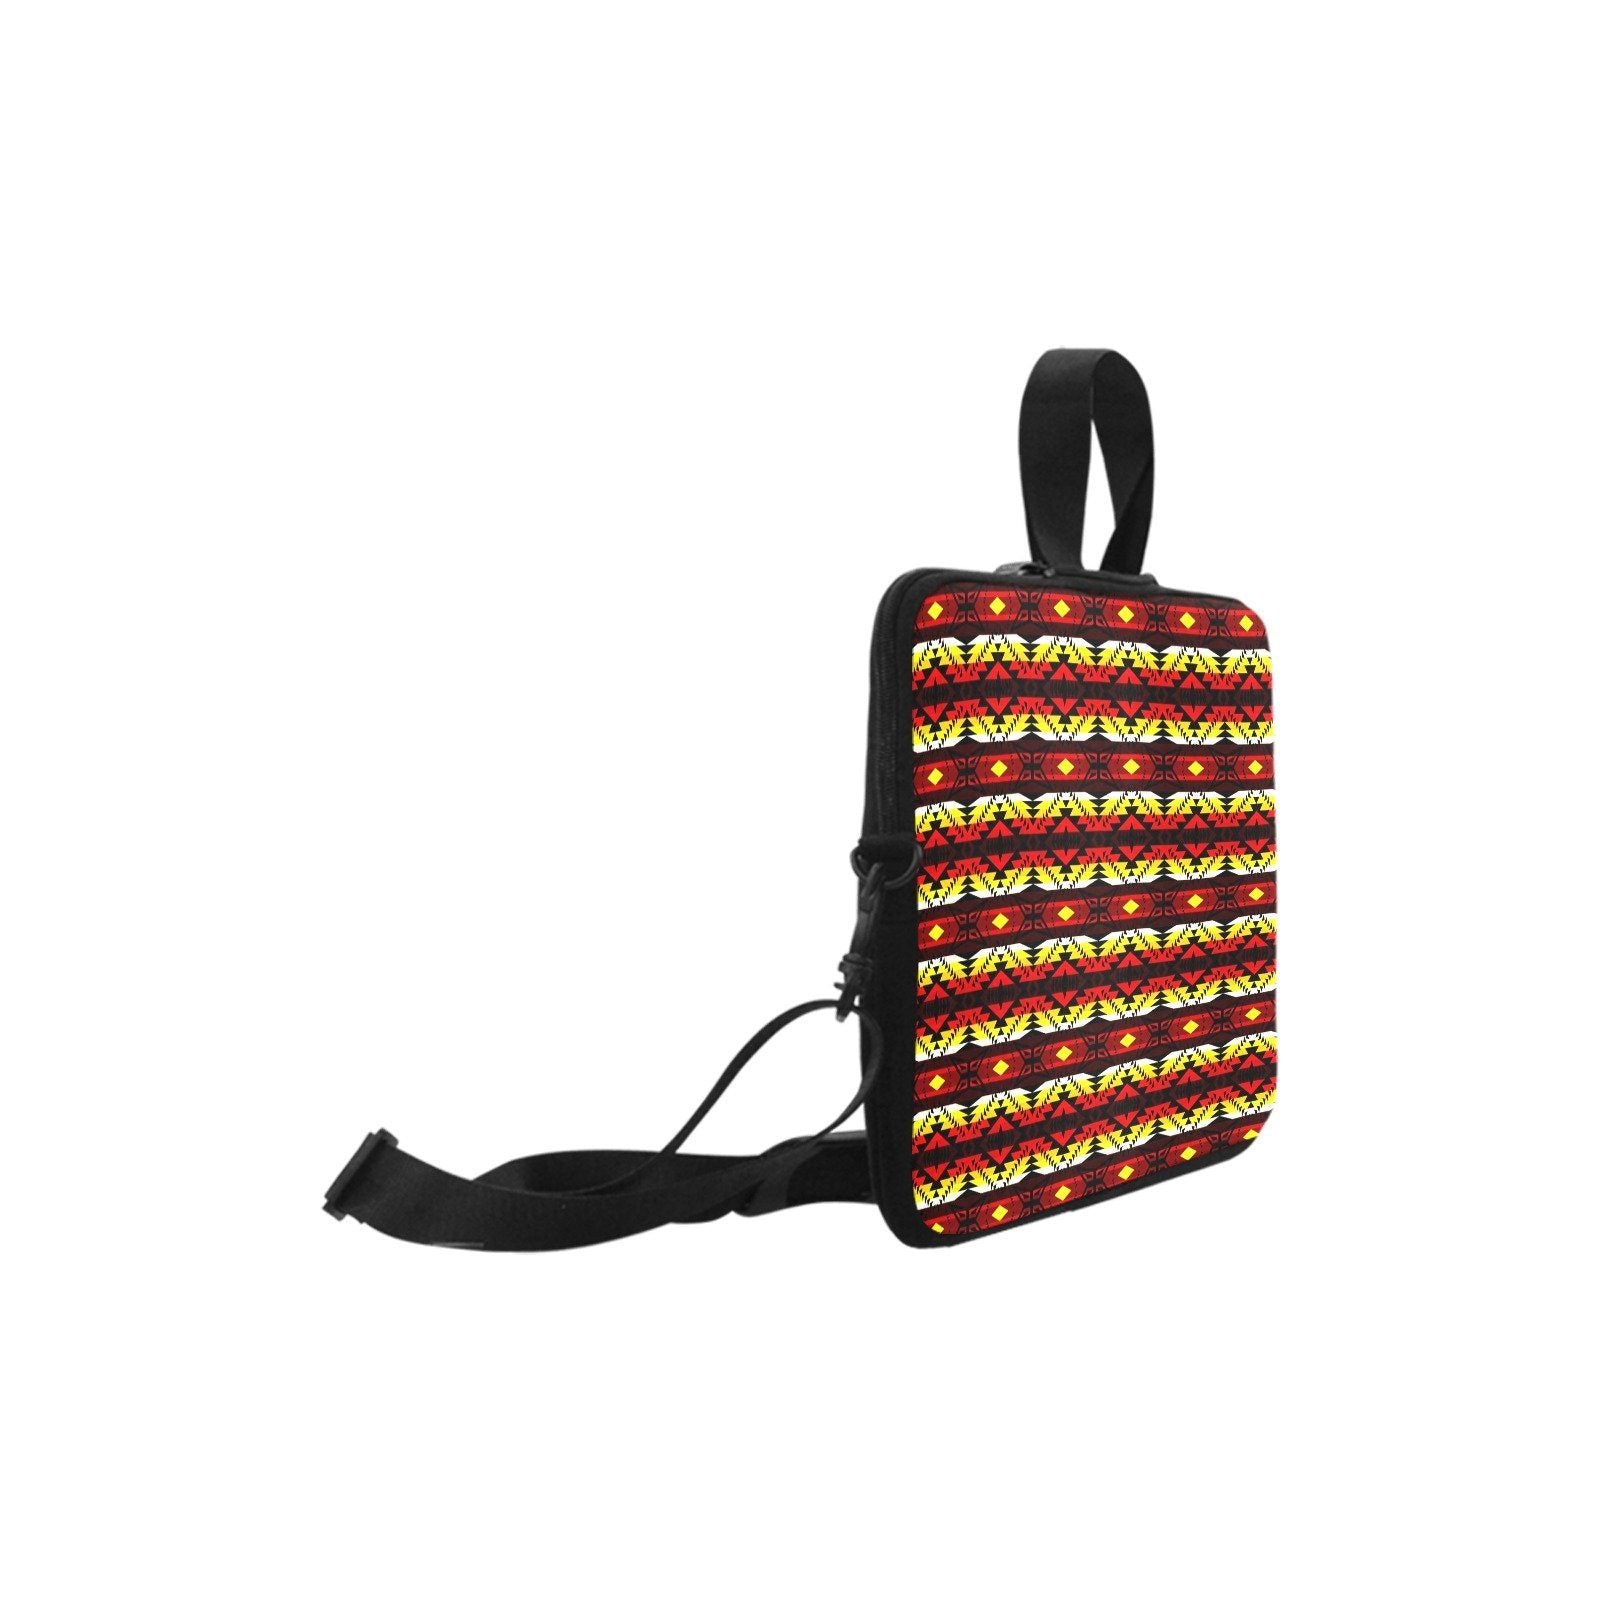 Canyon War Party Laptop Handbags 17" bag e-joyer 